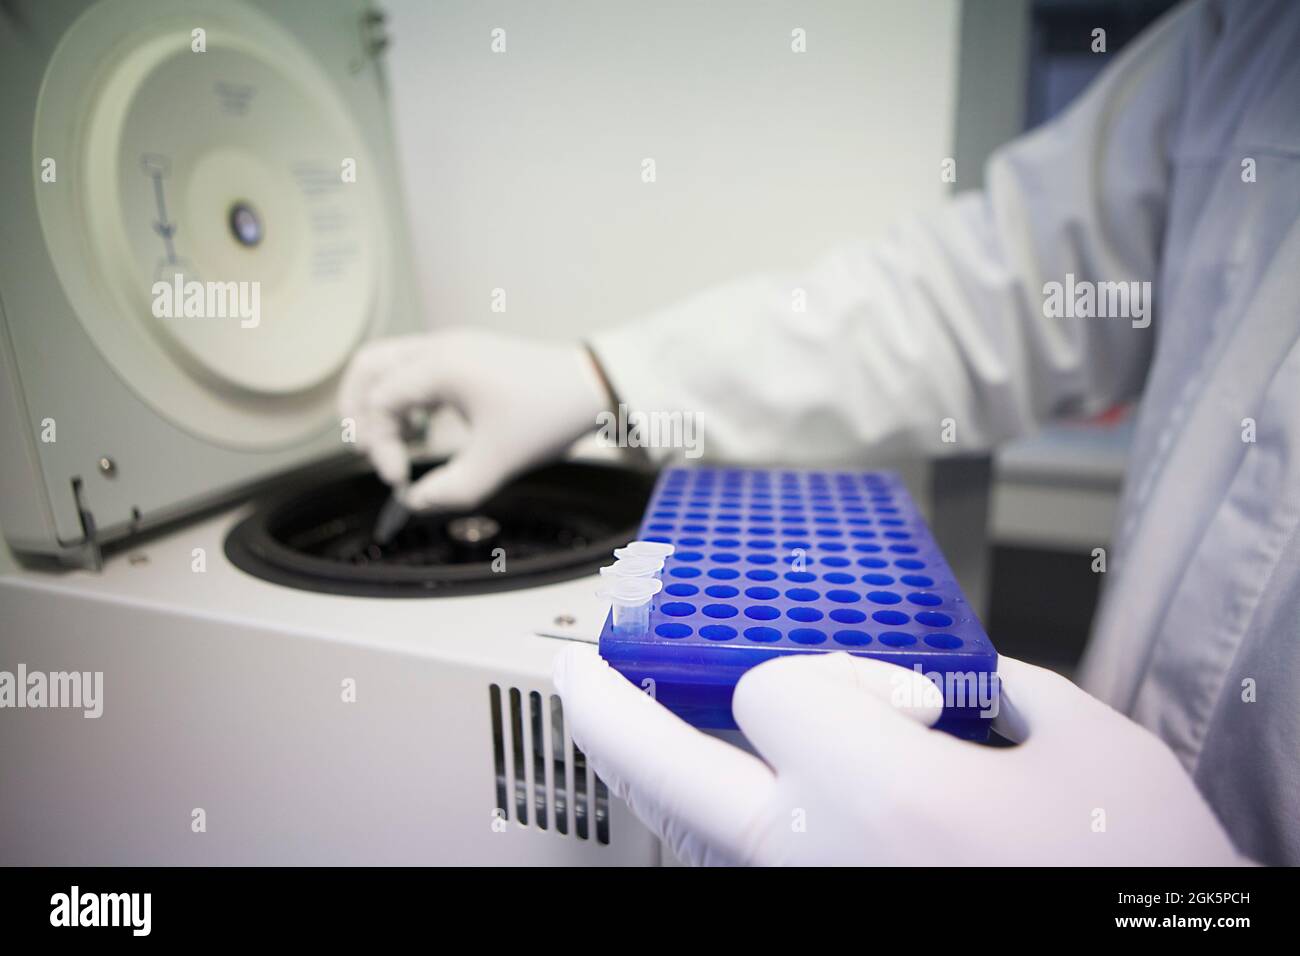 Analisi di laboratorio e risultati per testare l'efficacia di un vaccino contro l'AIDS. Foto Stock